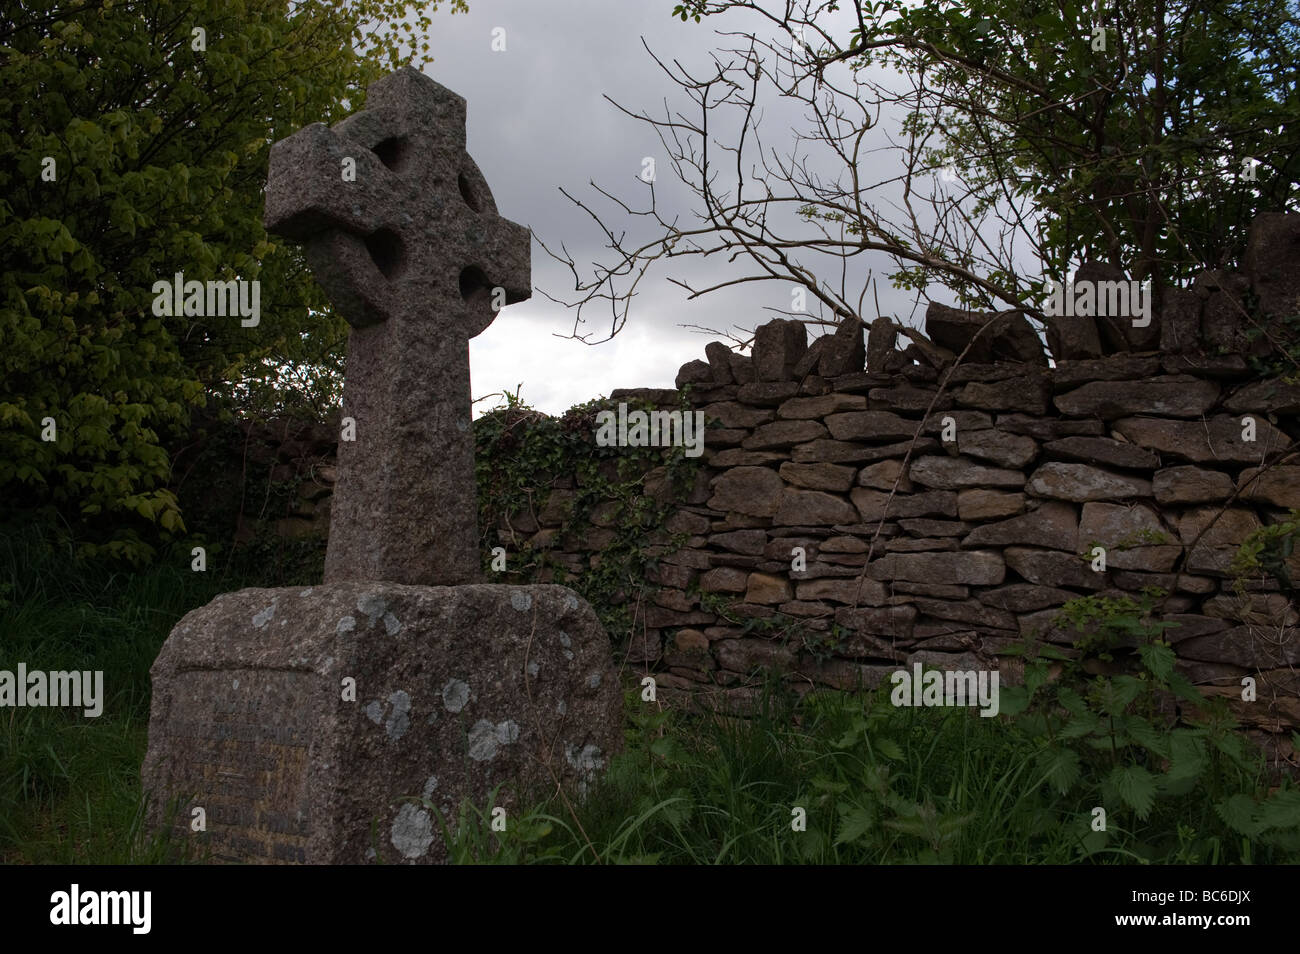 Atmosphärische und stimmungsvolle Pictue Stein Kreuz Grabstein gegen einen grauen Himmel und trocknen Steinmauer an Beckford Turm, Lansdown, Bath Stockfoto